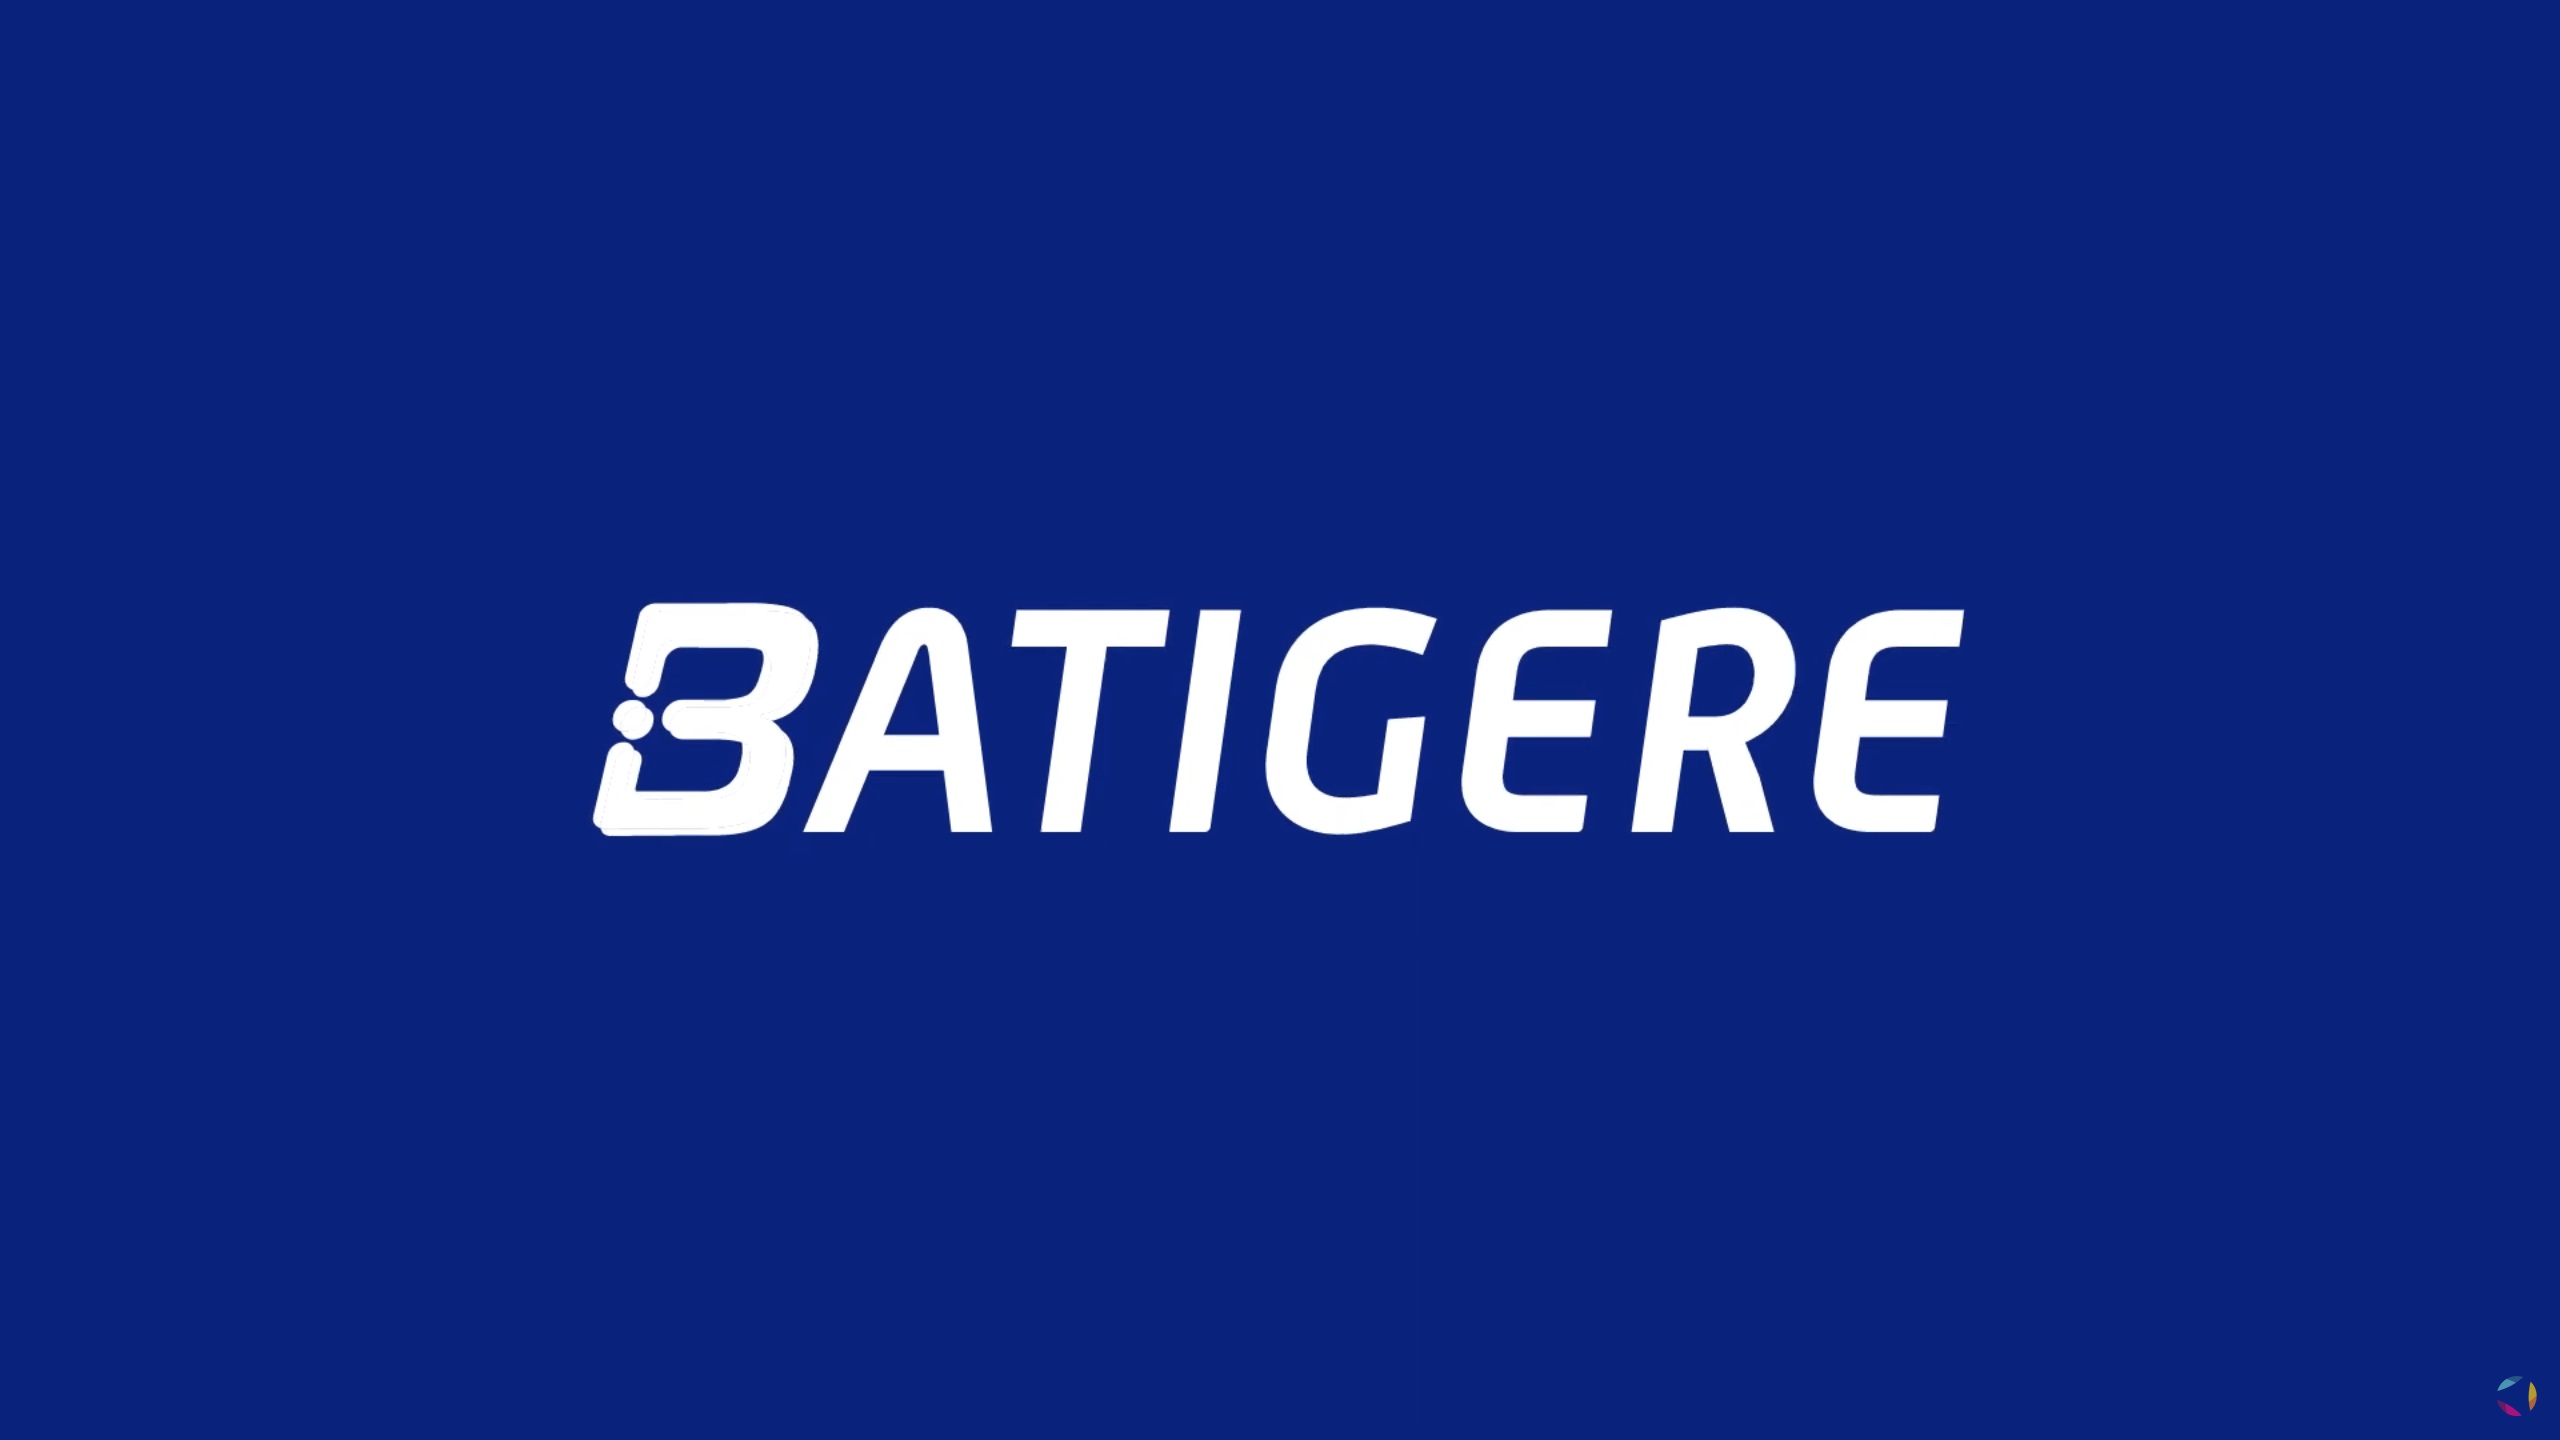 Batigere - Bailleur Citoyen